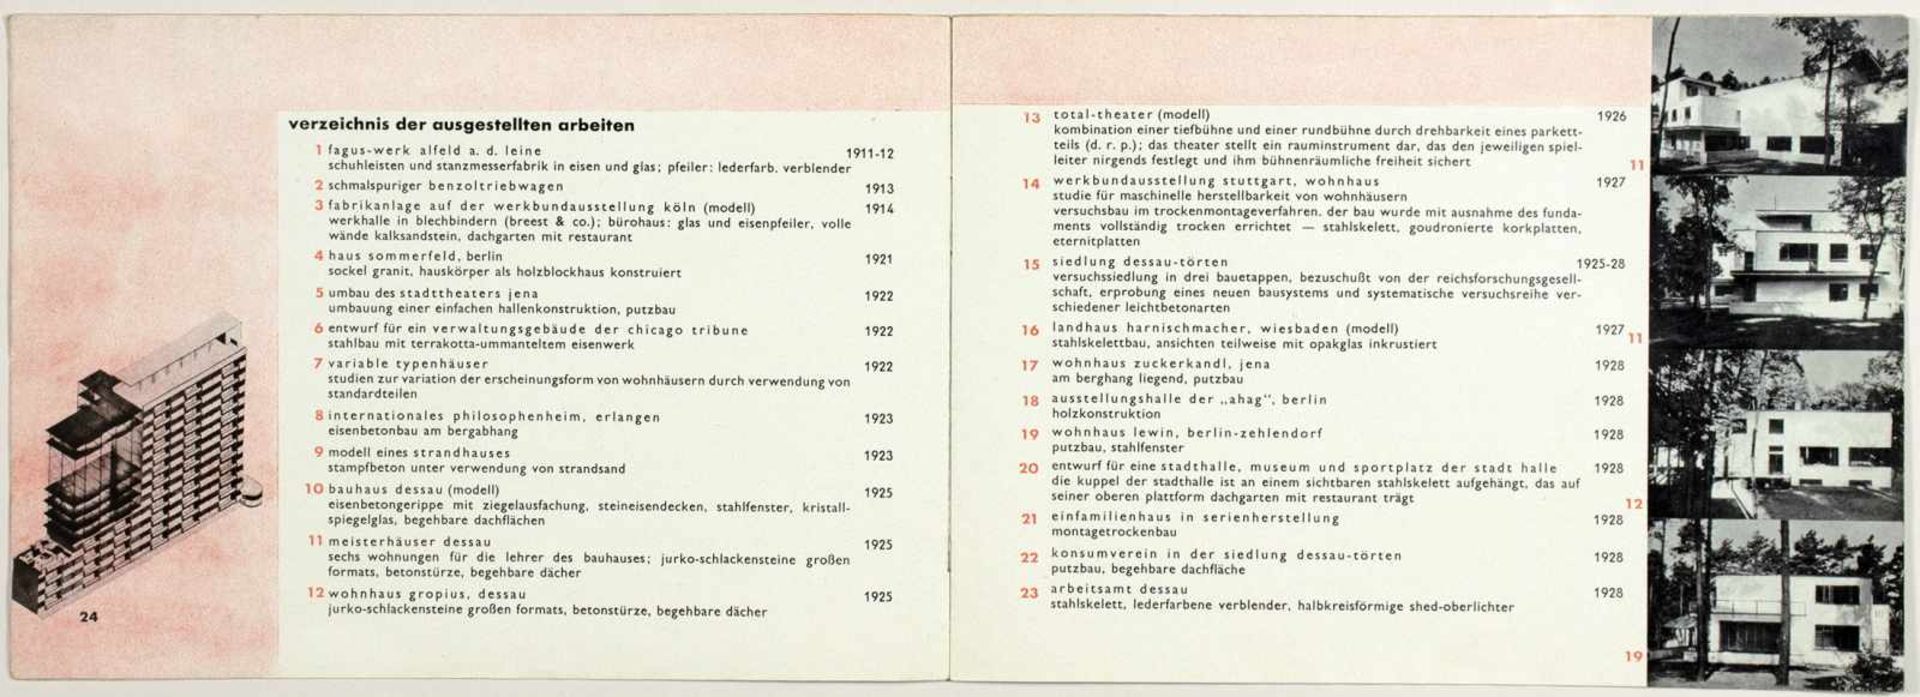 Laszlo Moholy-Nagy - Ausstellung Walter Gropius. Zeichnungen, Fotos, Modelle in der ständigen - Image 3 of 8